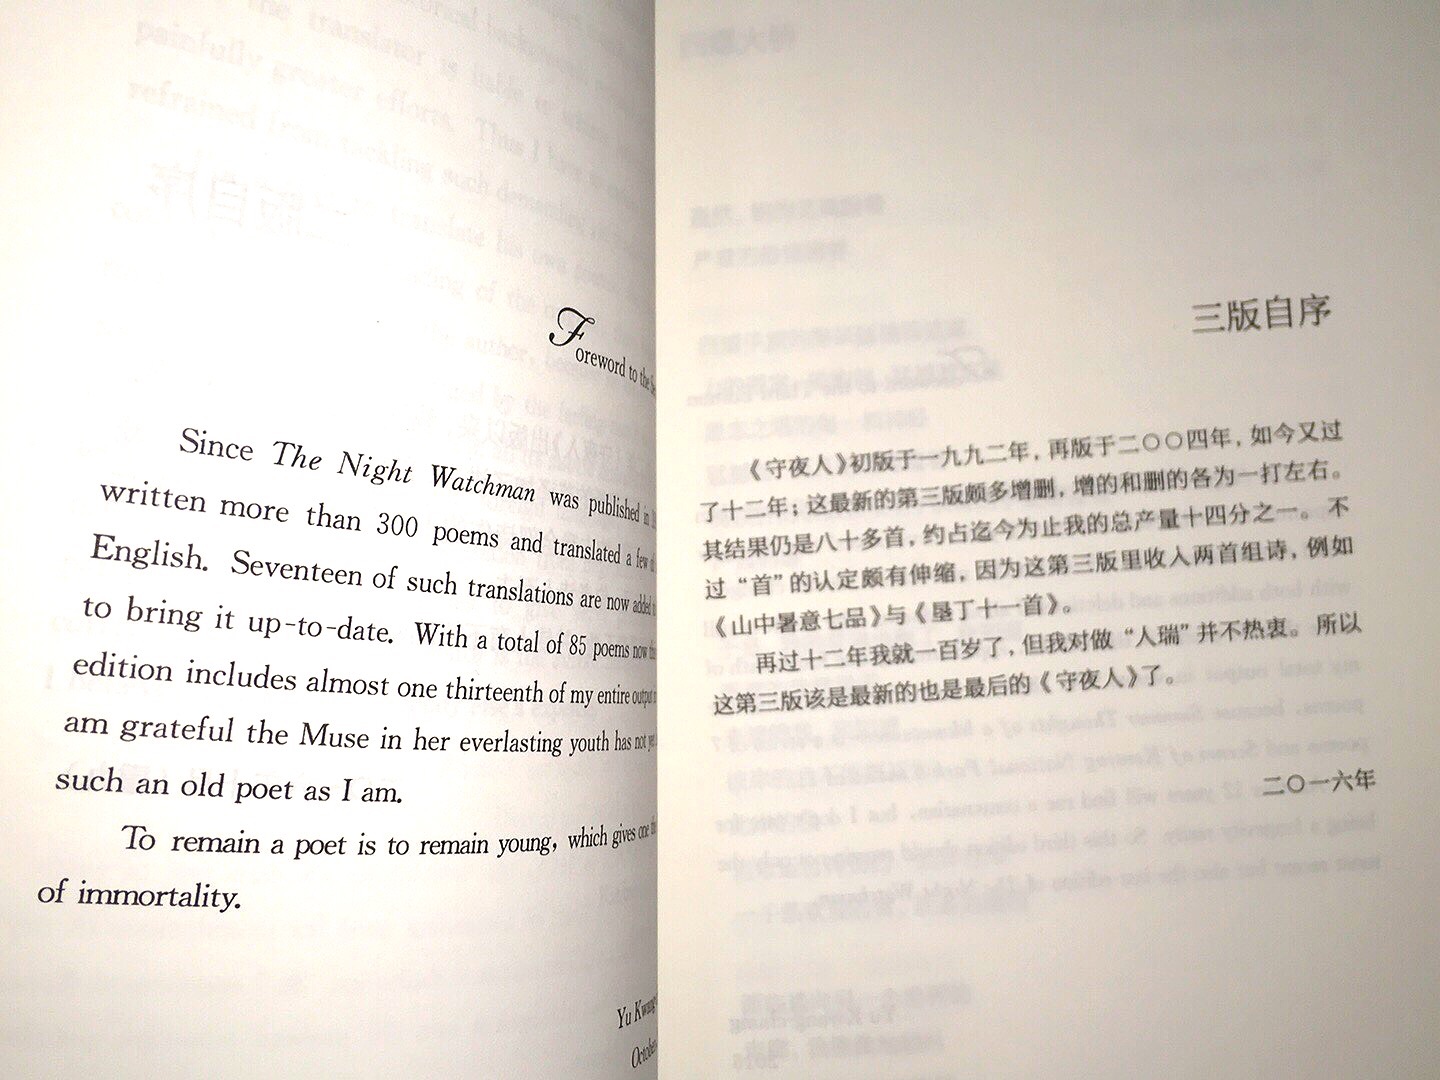 前部分是中文，后部分英文。字体偏小，且每页留白较多，排版有问题。